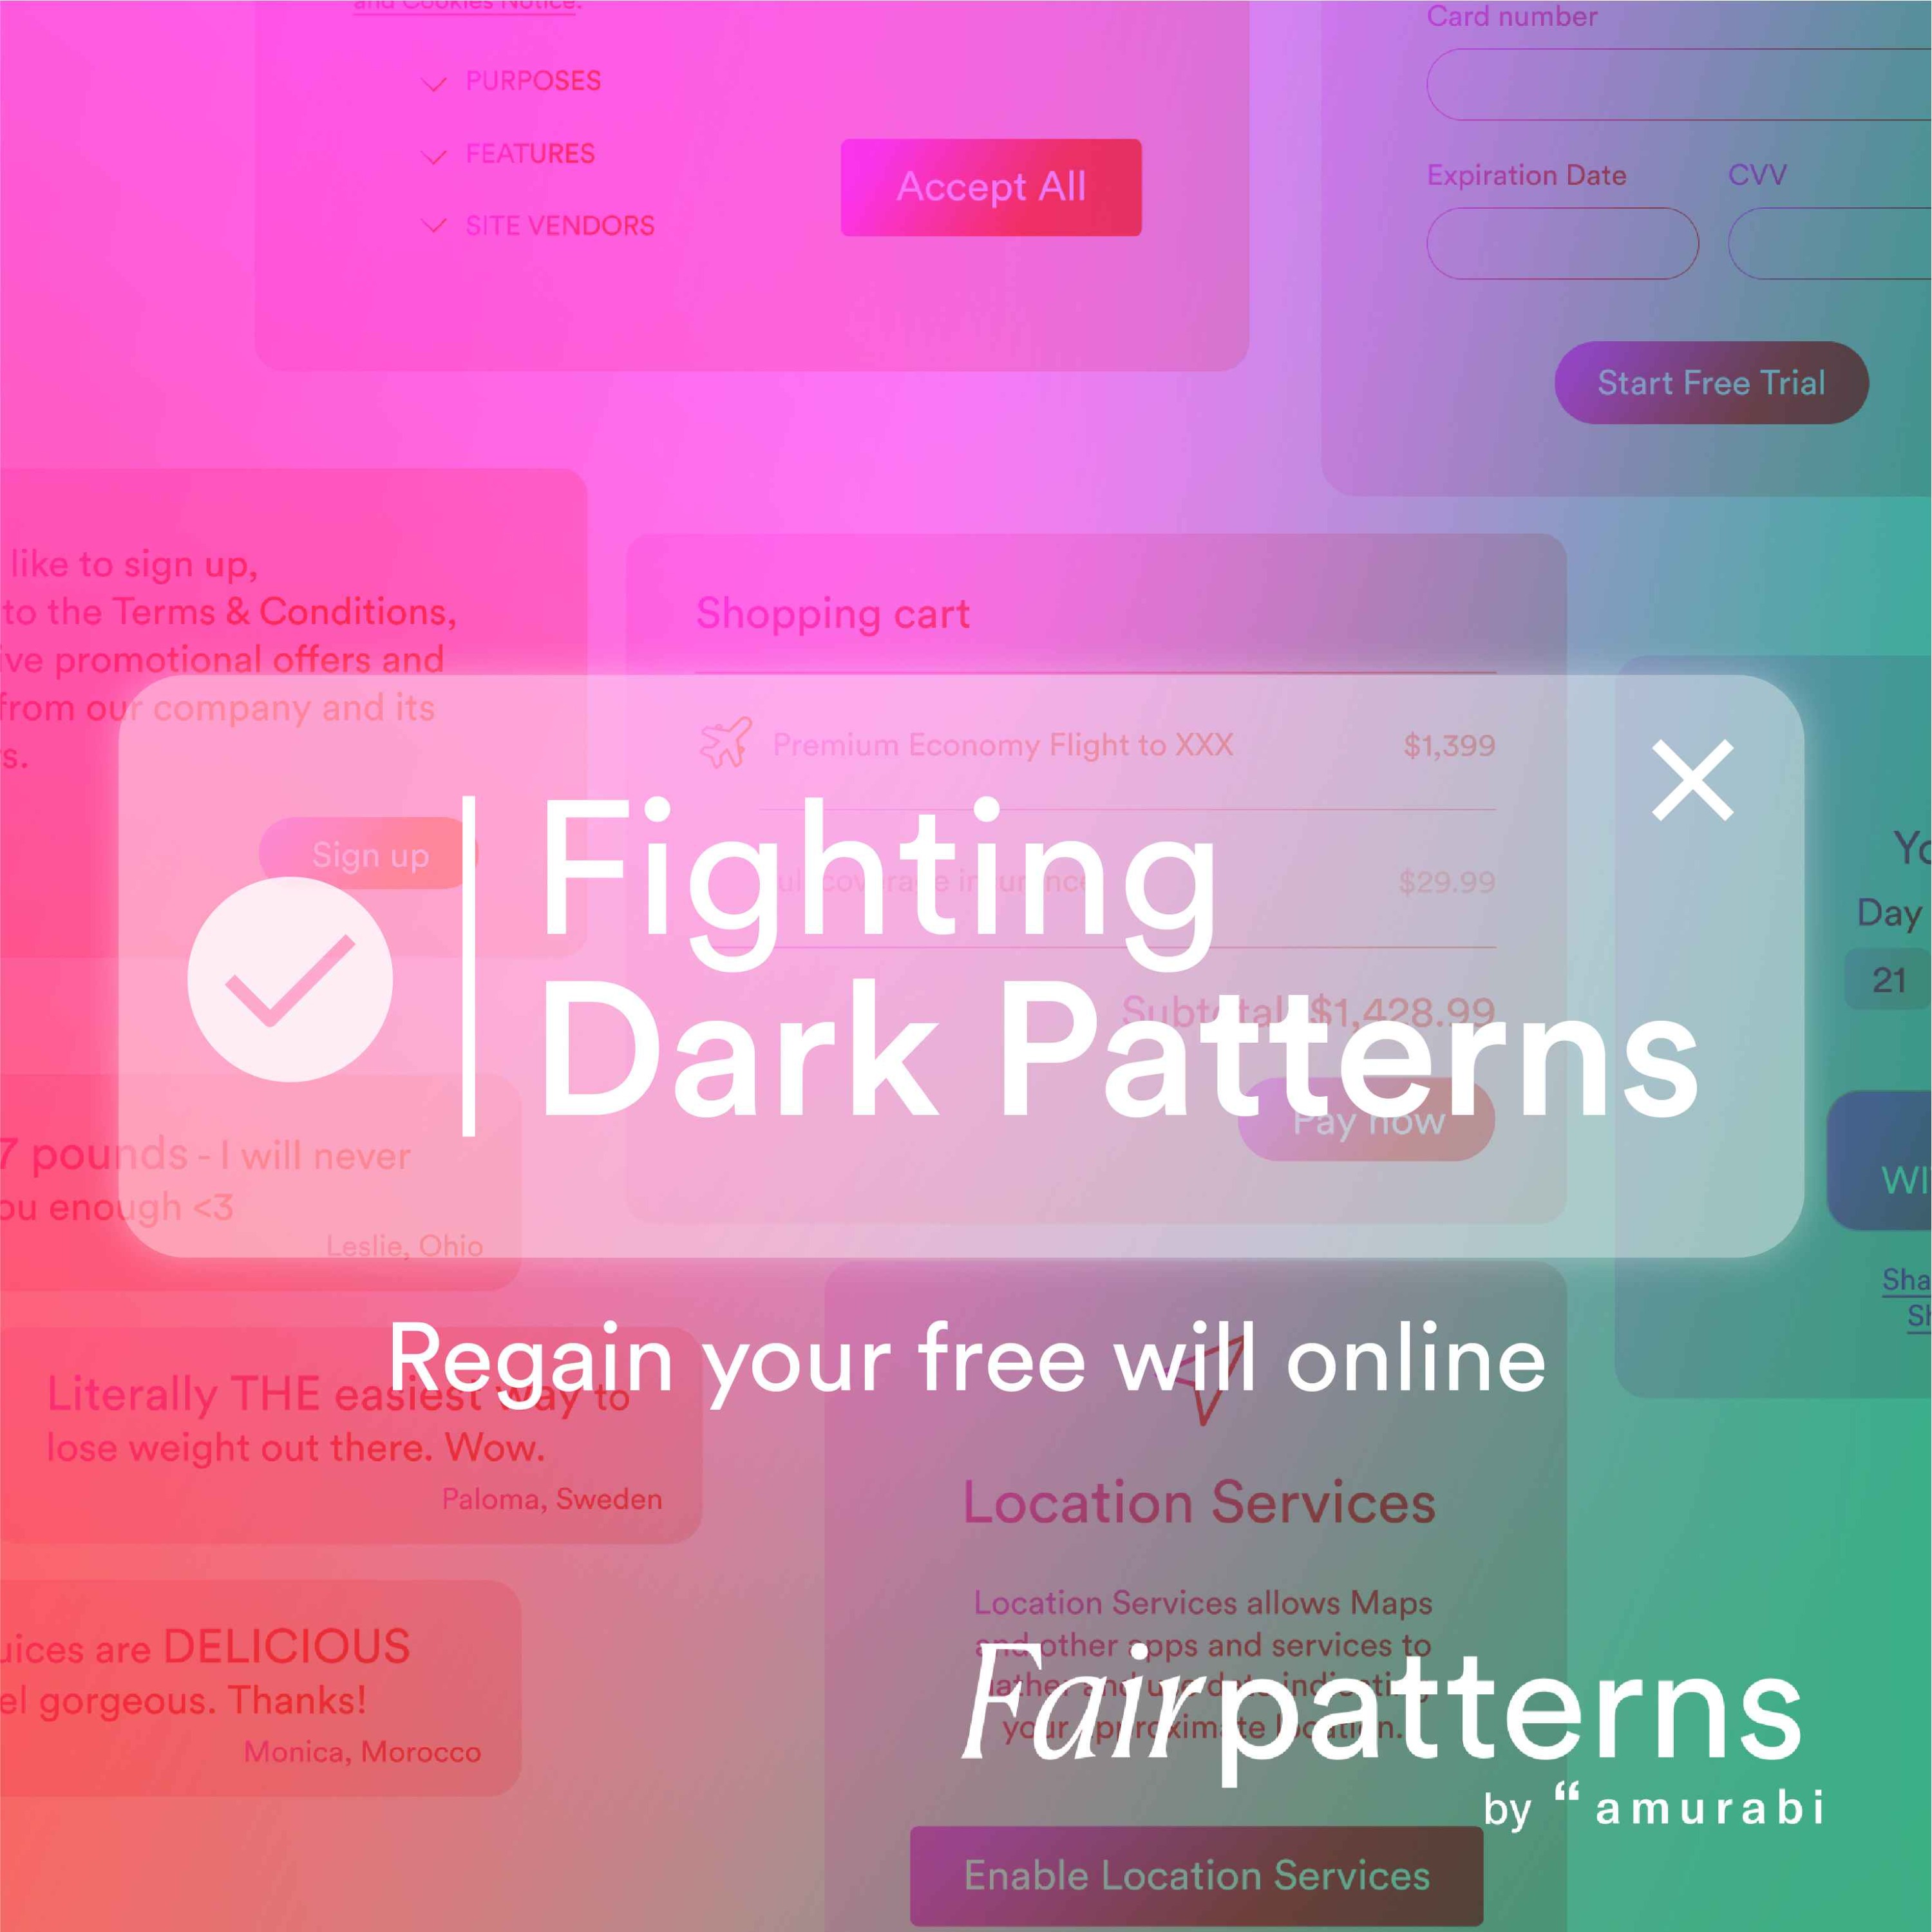 Fighting dark patterns - regain your free will online